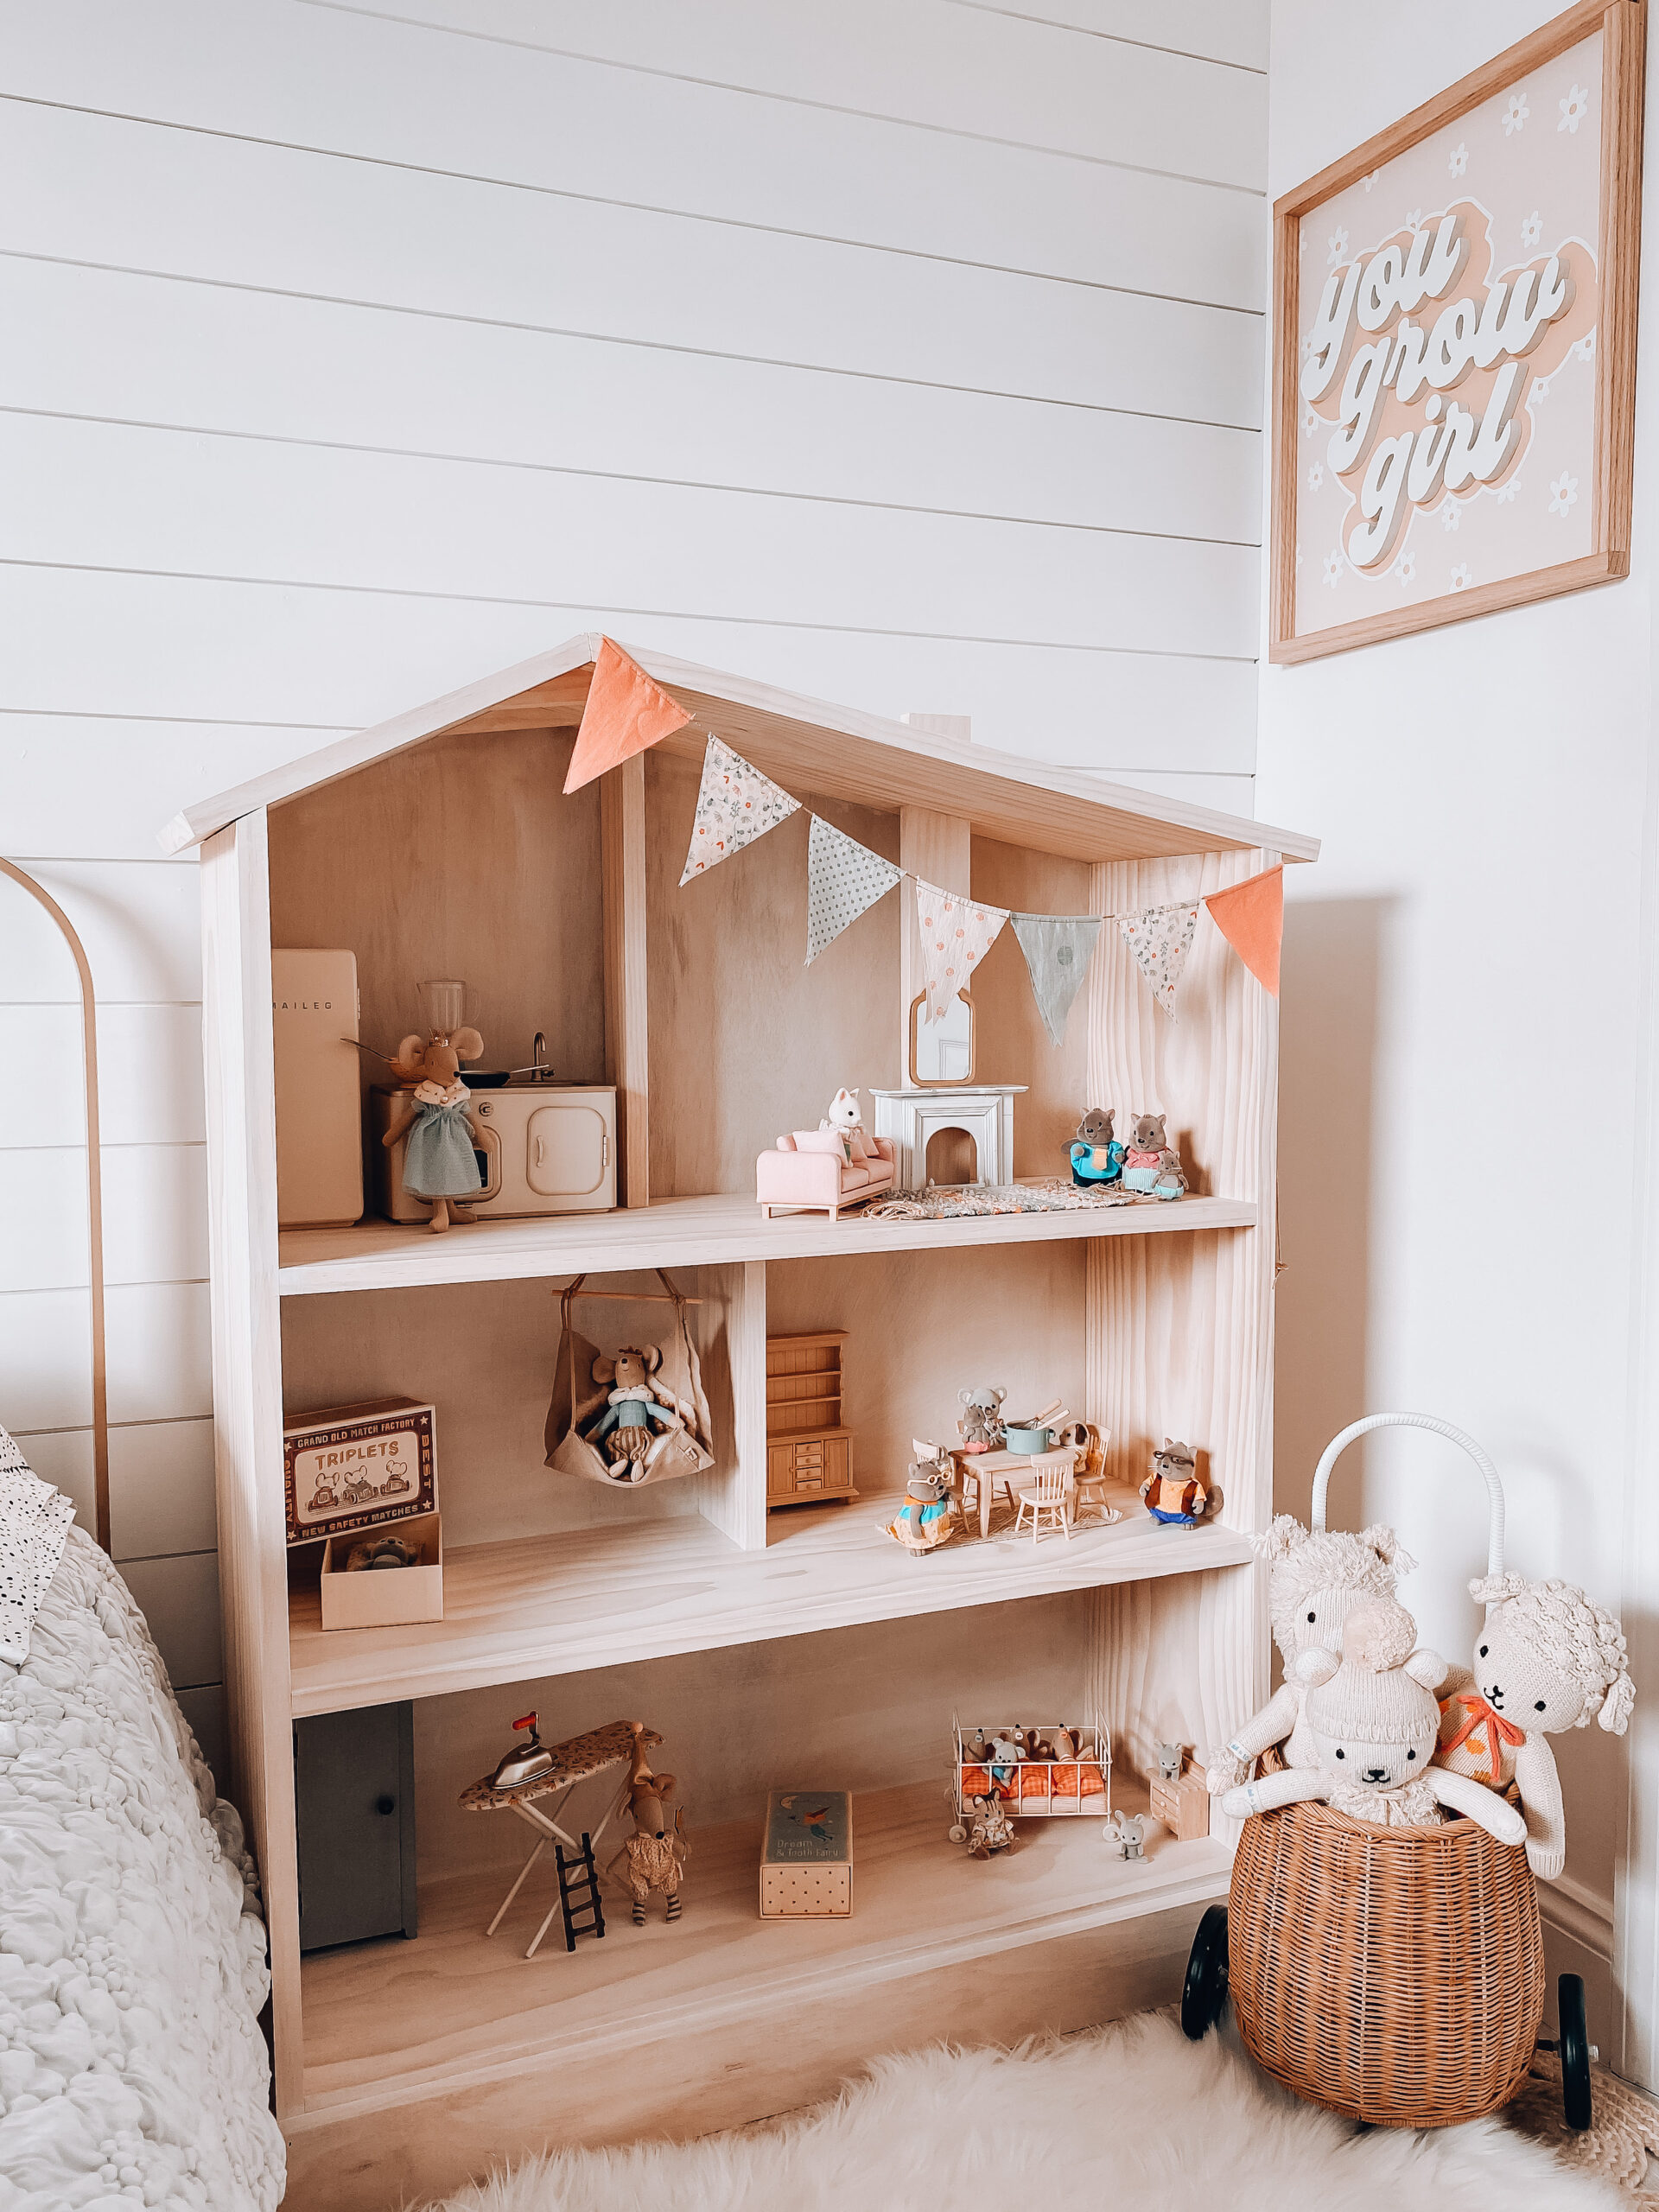 DIY Dollhouse for $100 - Stephanie Hanna Blog